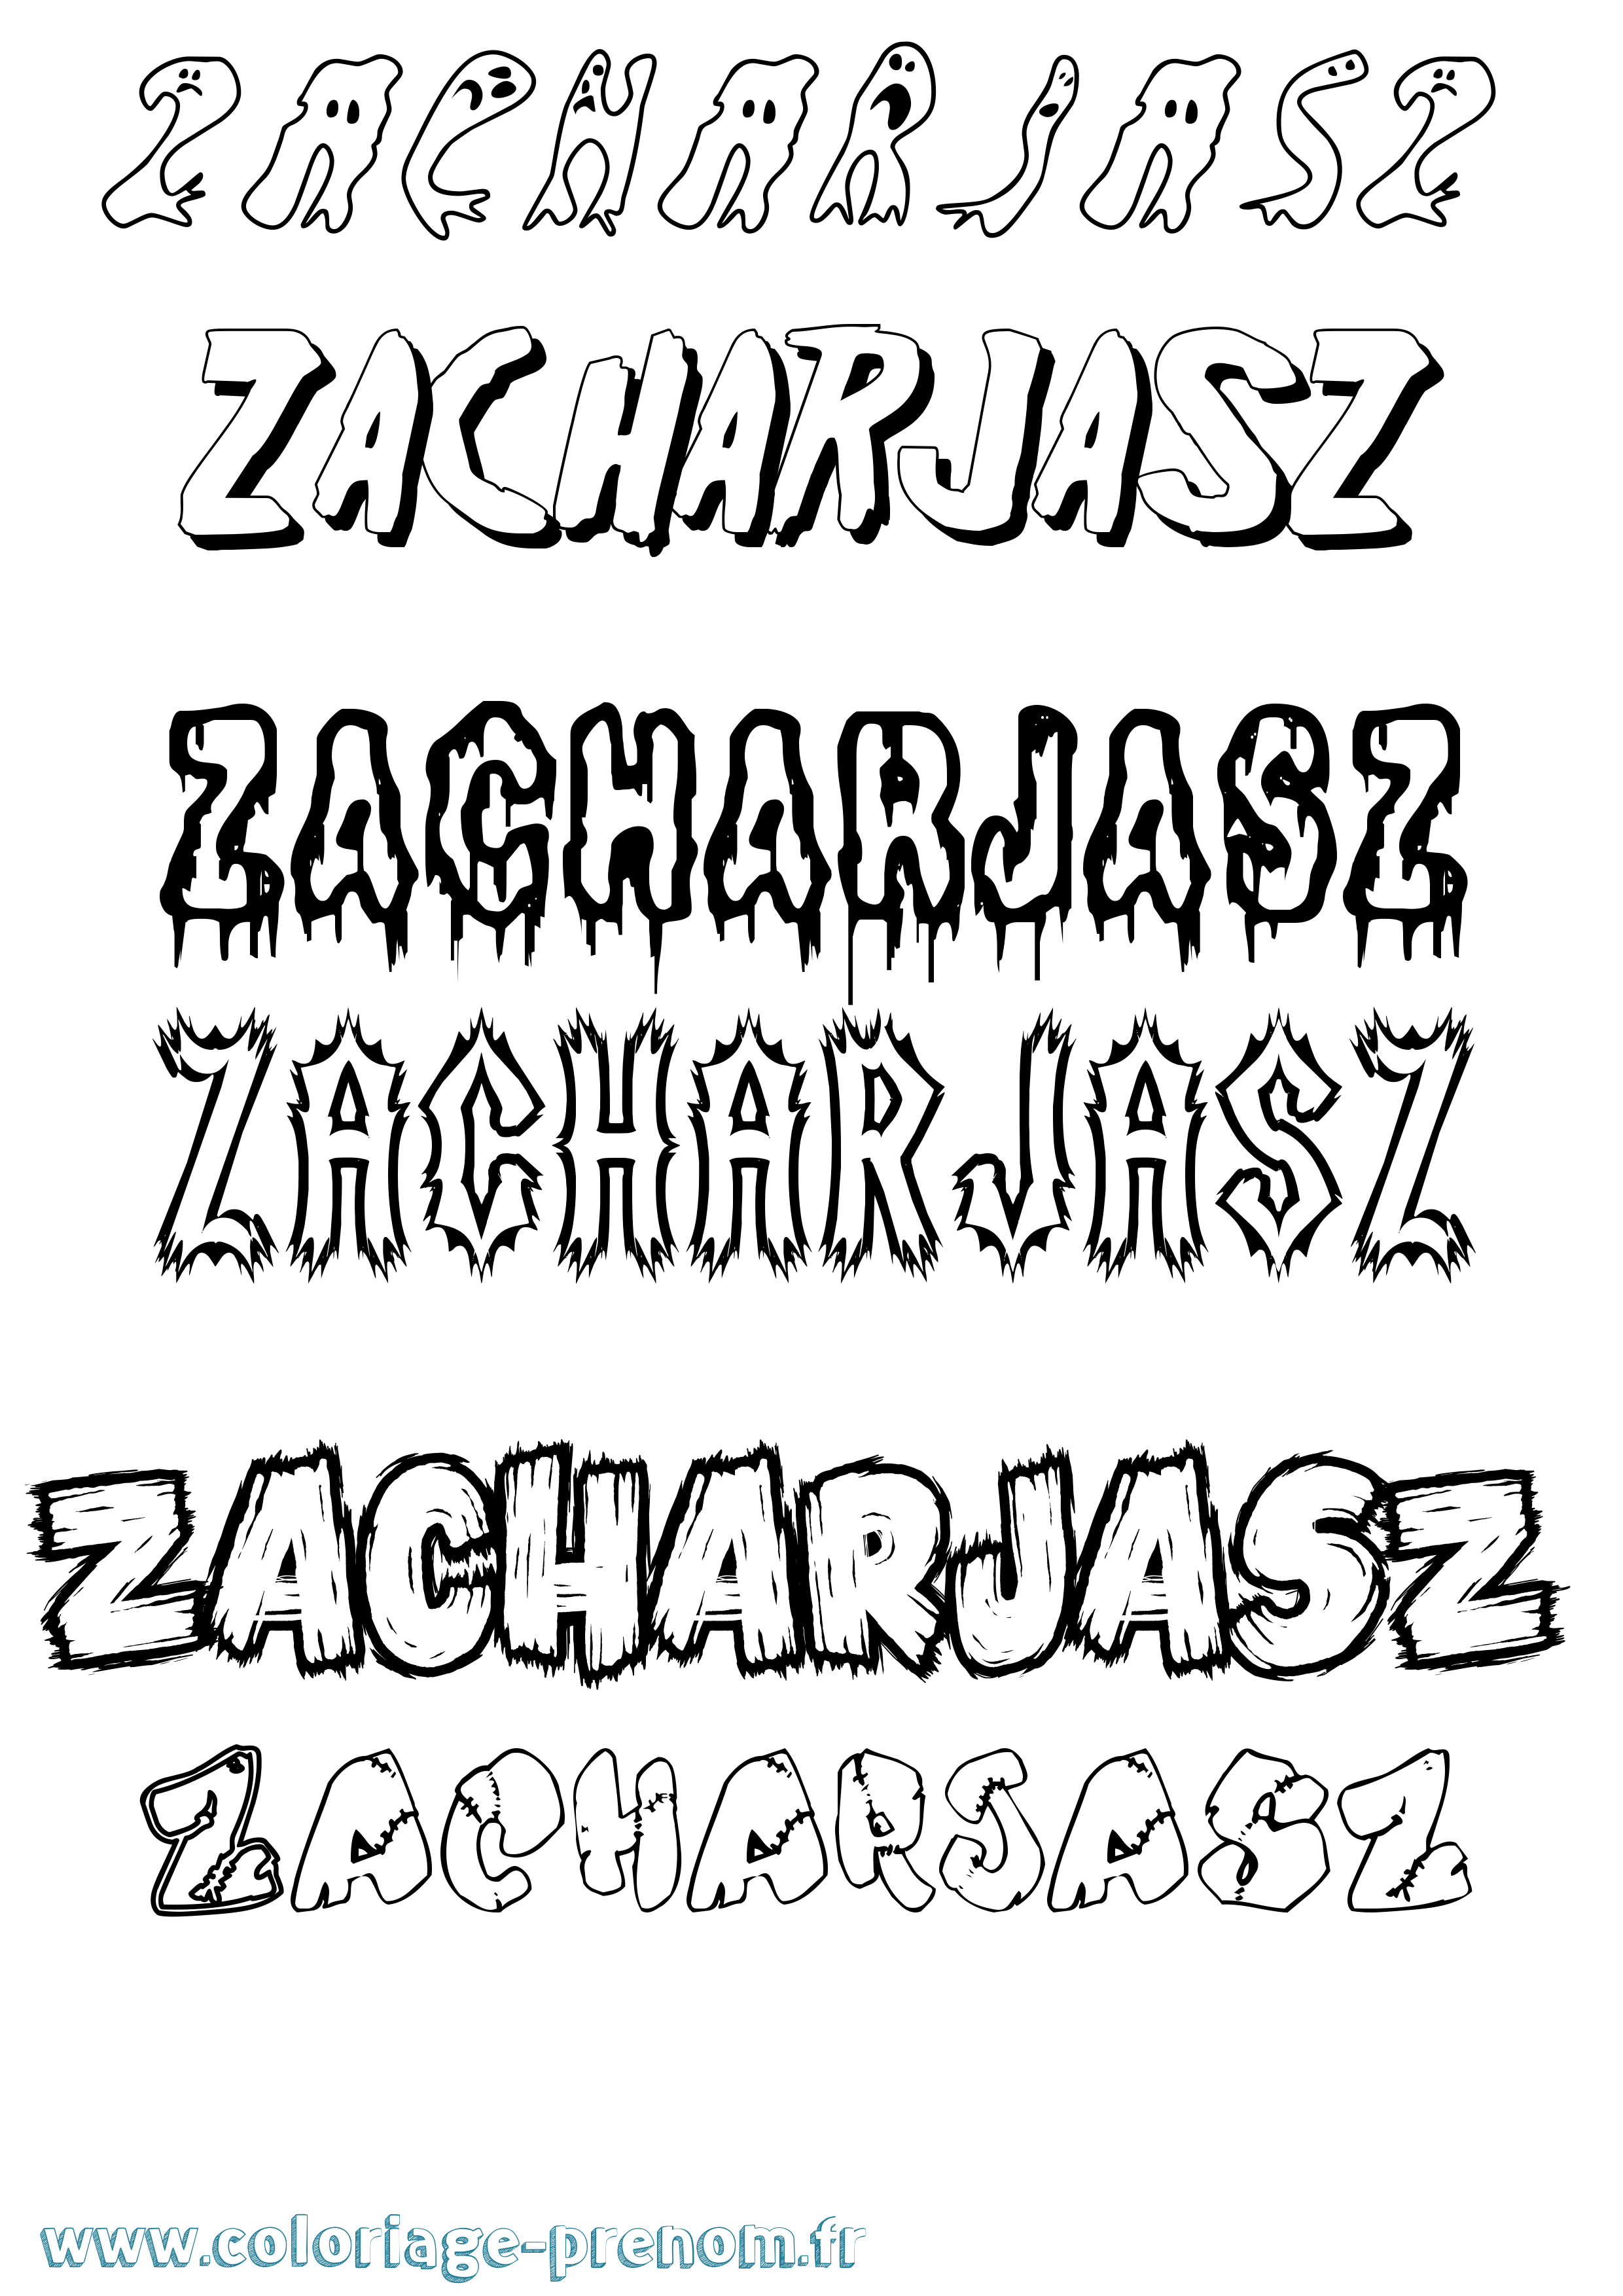 Coloriage prénom Zacharjasz Frisson